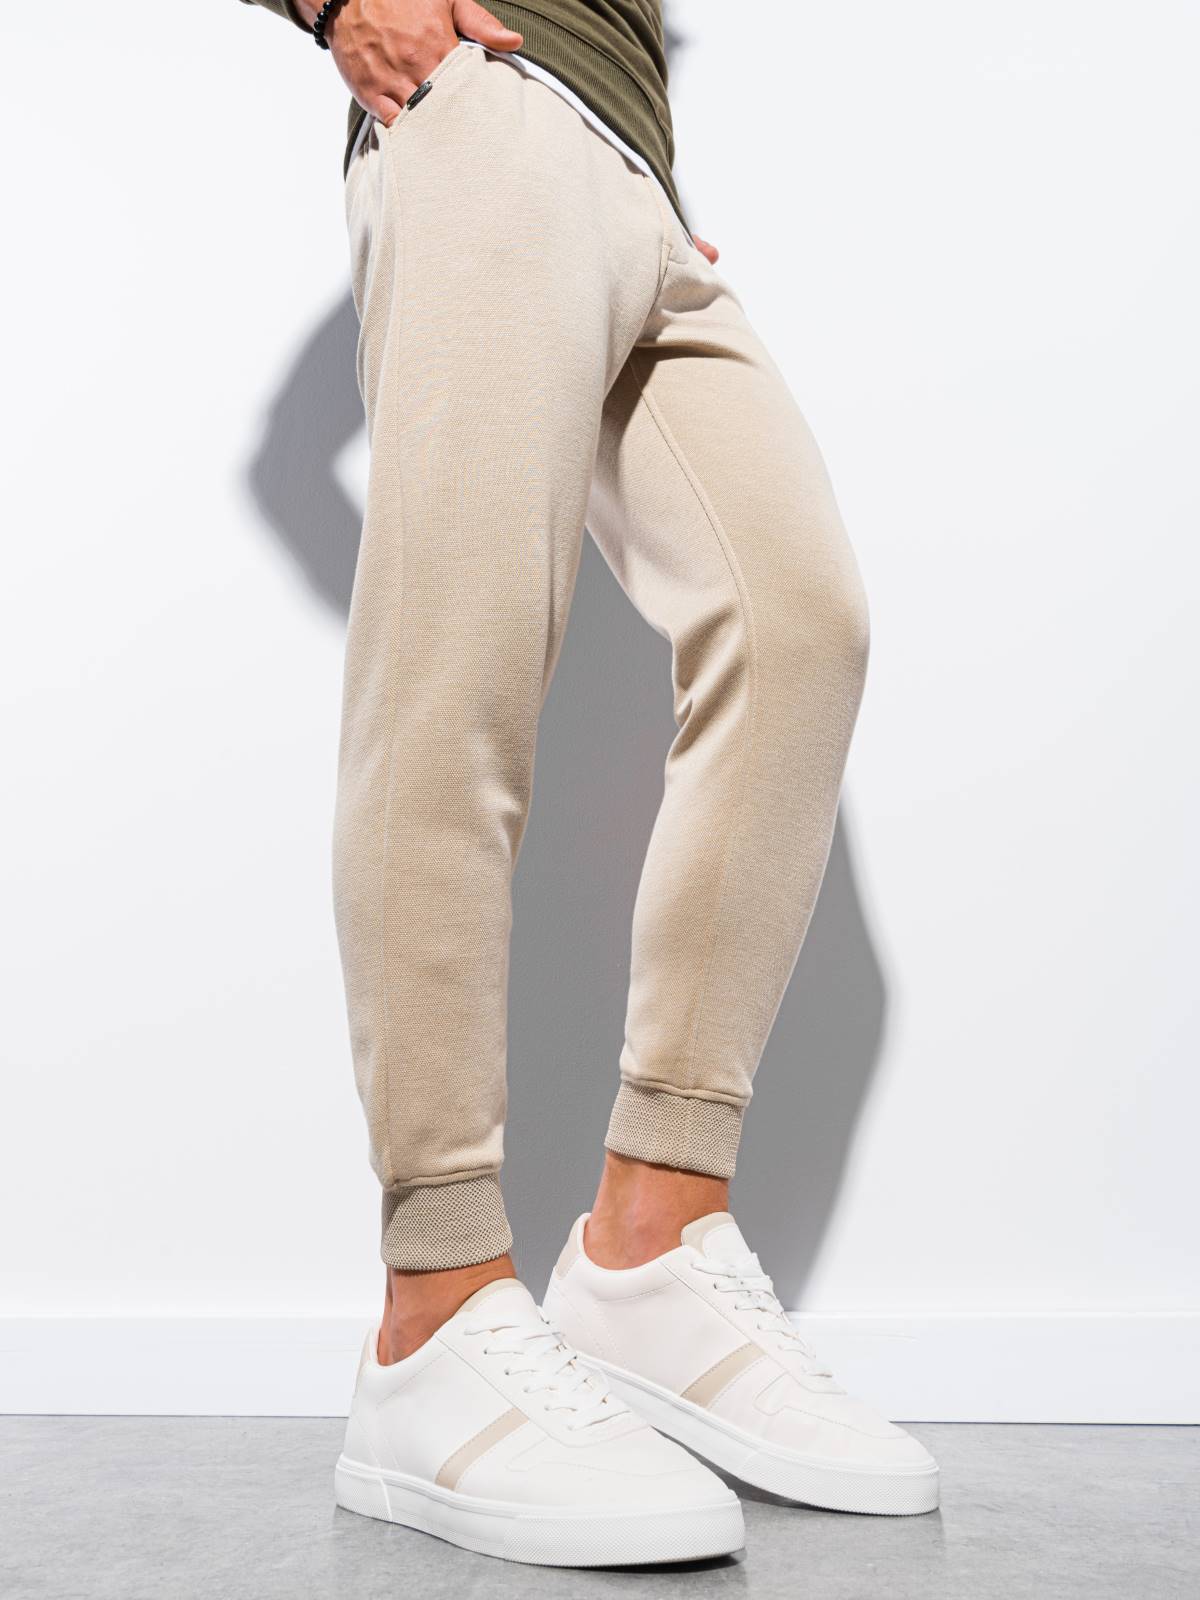 Men's sweatpants - beige P991  MODONE wholesale - Clothing For Men